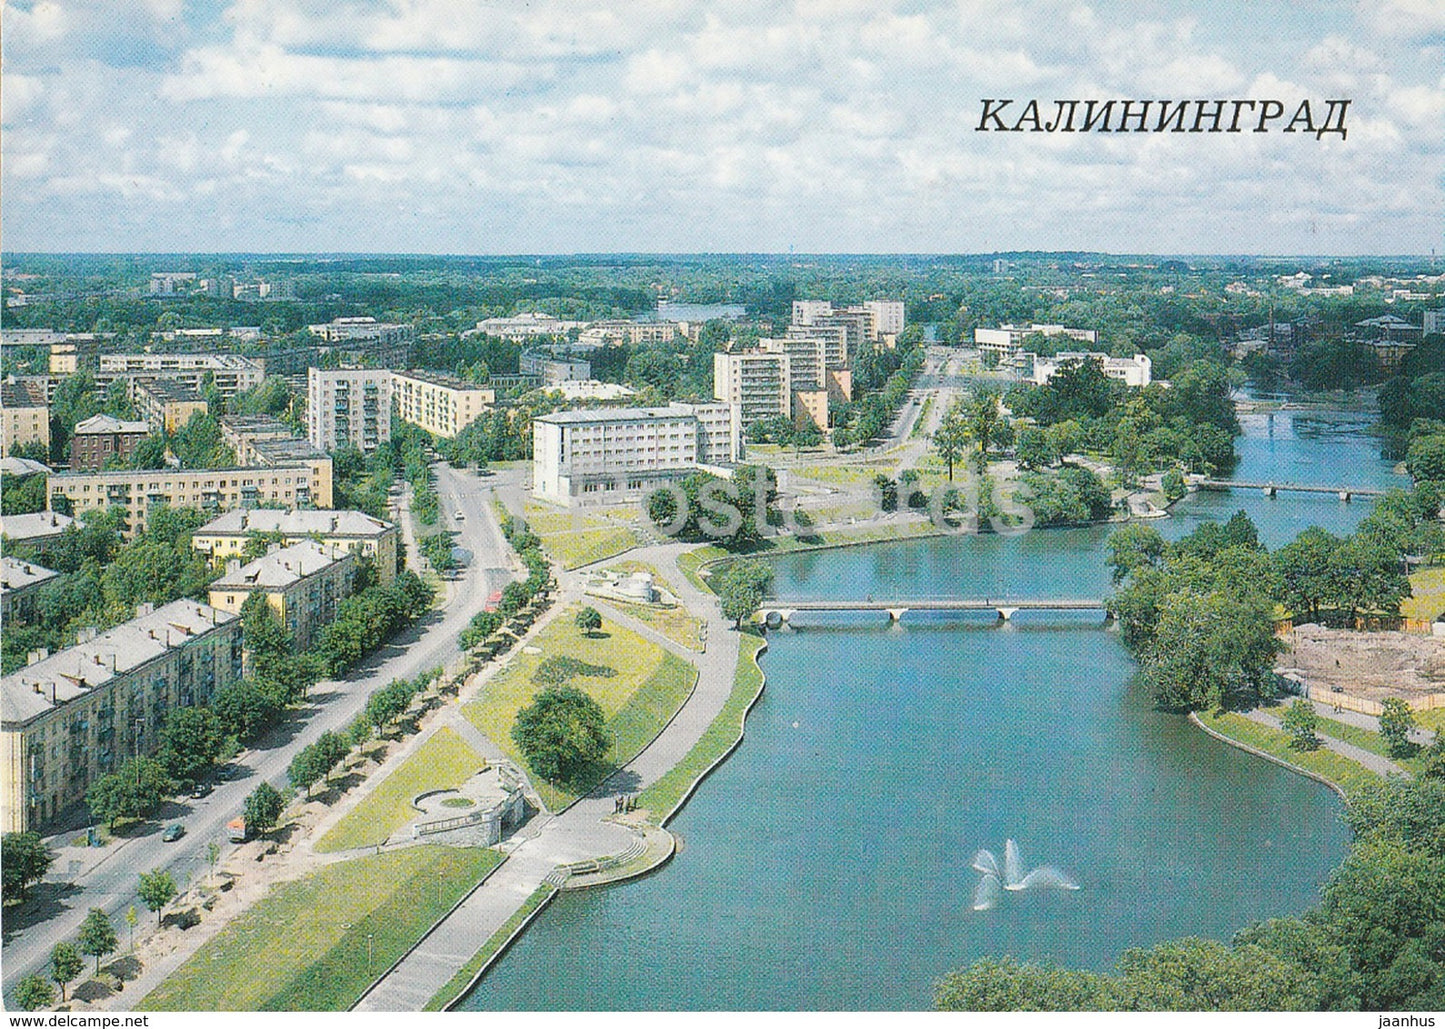 Kaliningrad - Konigsberg - New Apartment Blocks - The Lower Pond - 1987 - Russia USSR - unused - JH Postcards